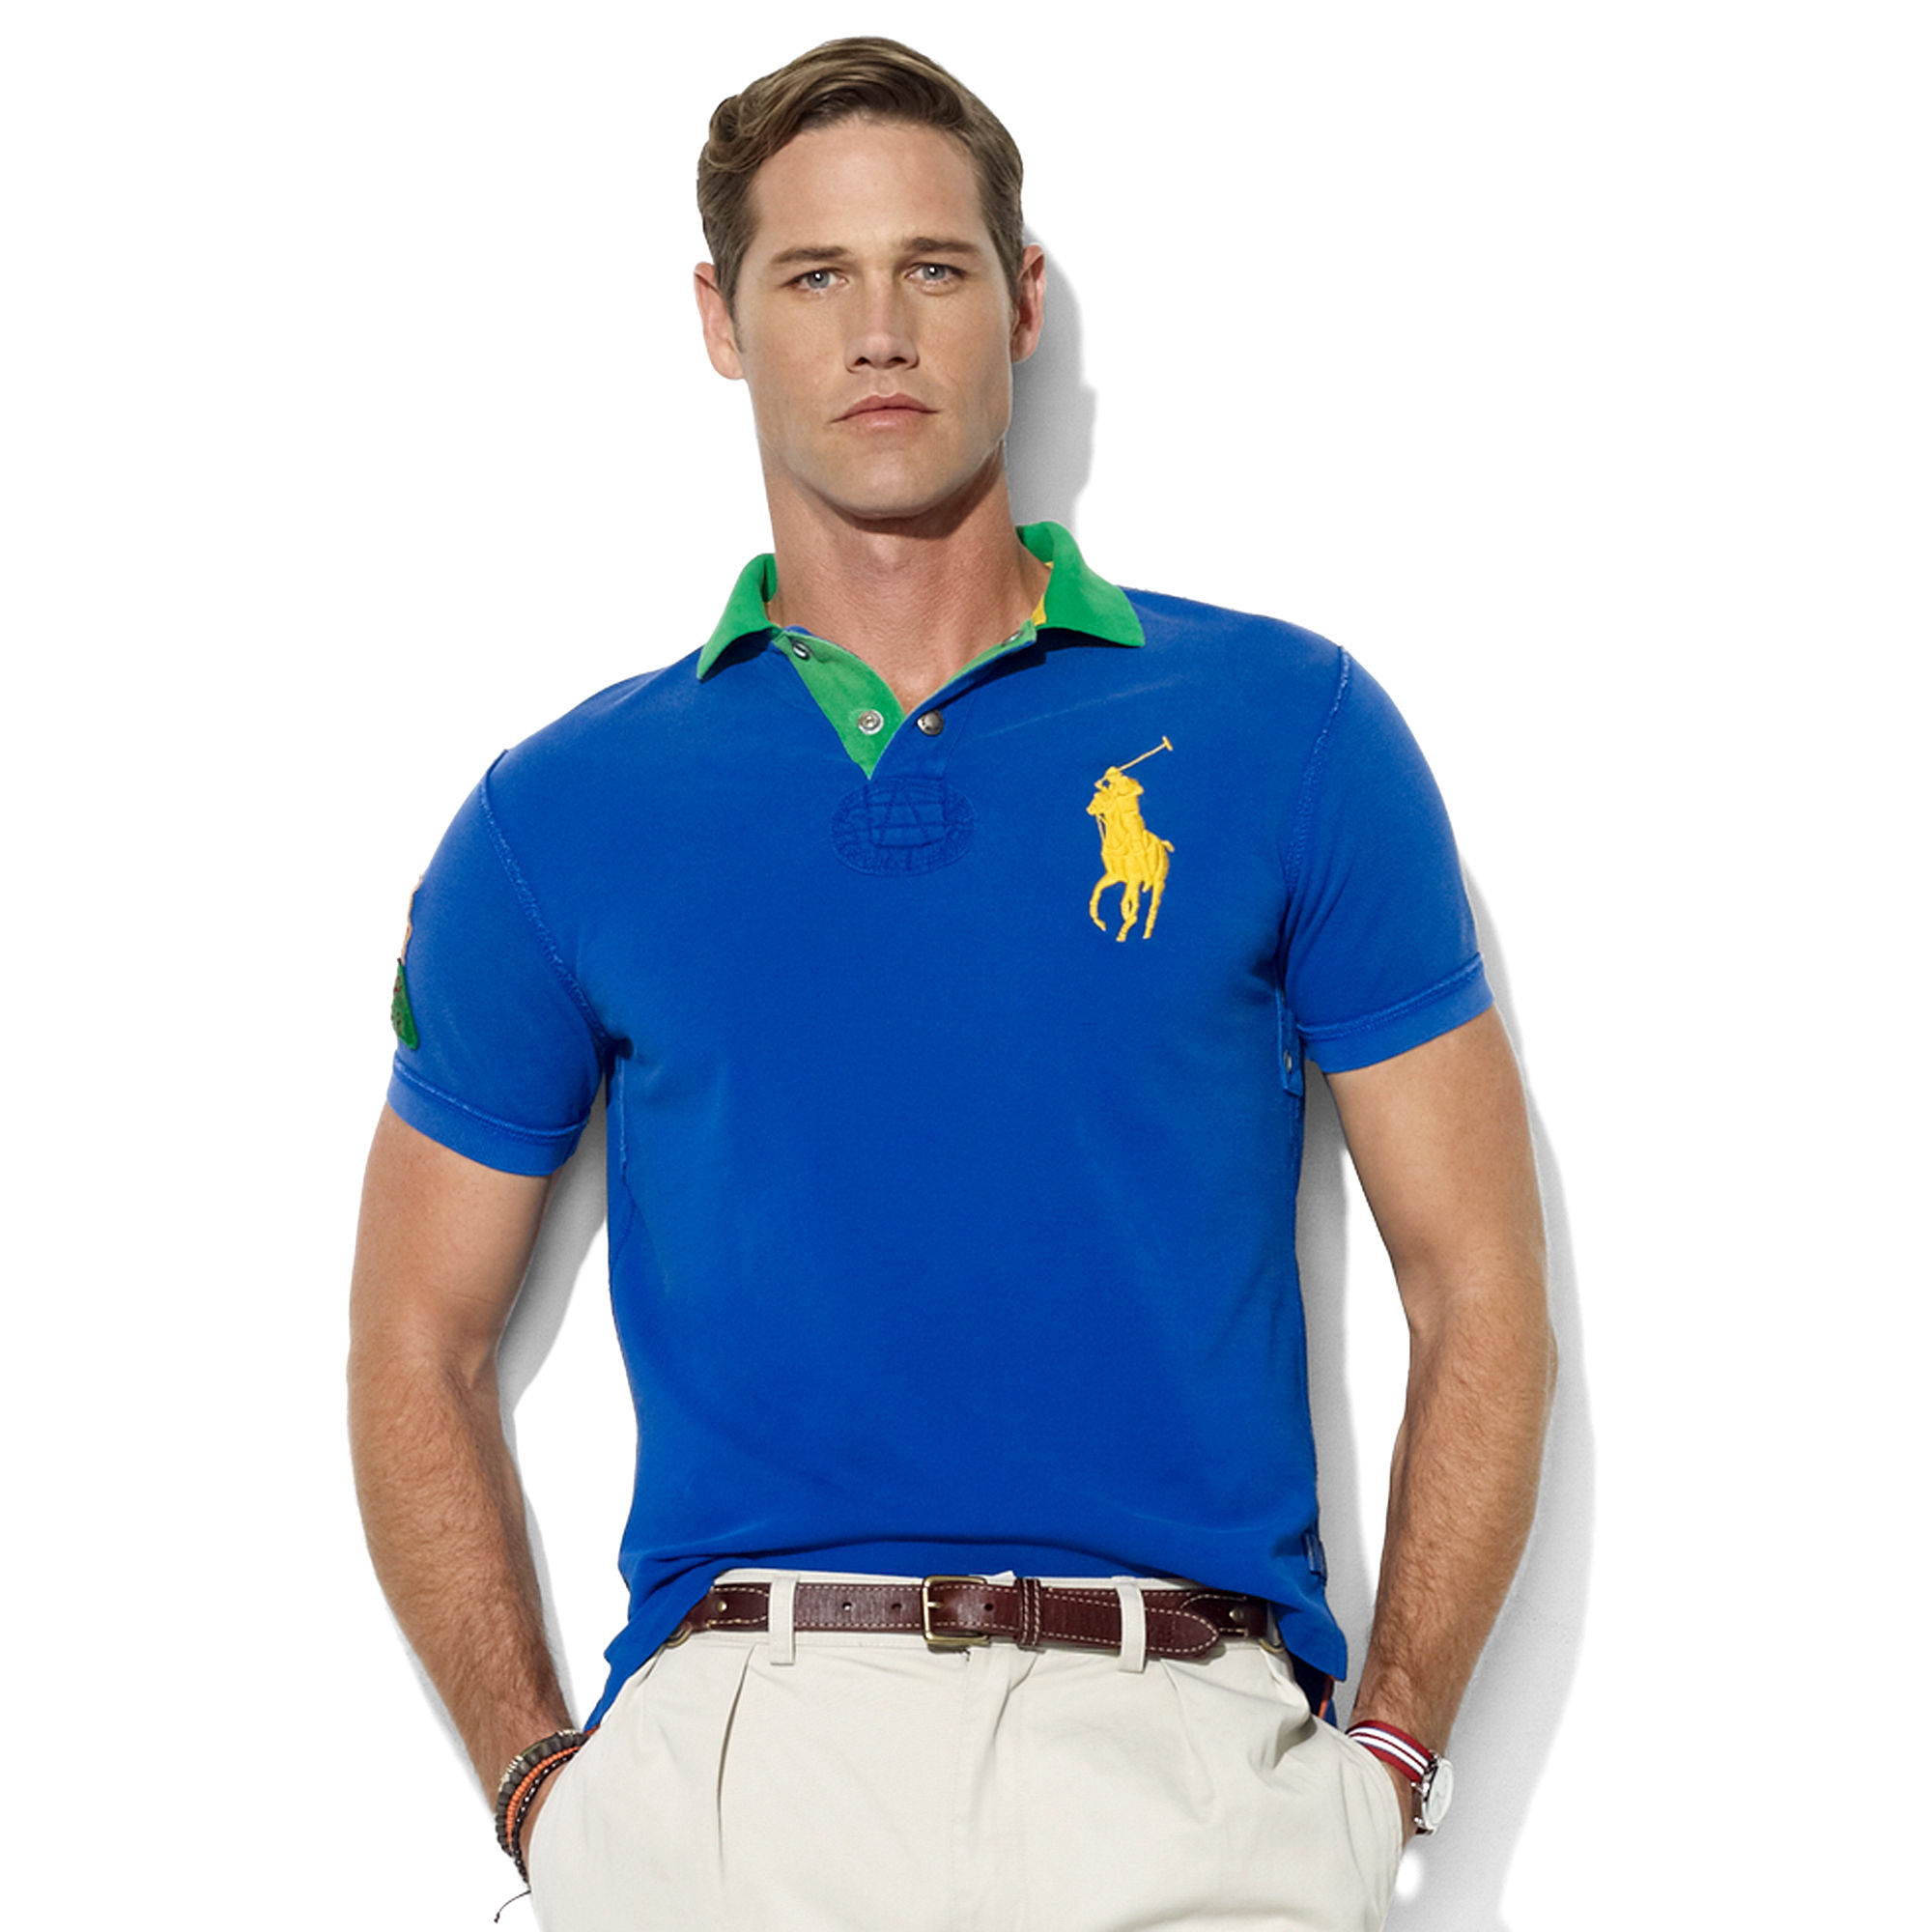 Ralph Lauren Classic Fit Short Sleeve Contrast Collar Mesh Polo Shirt